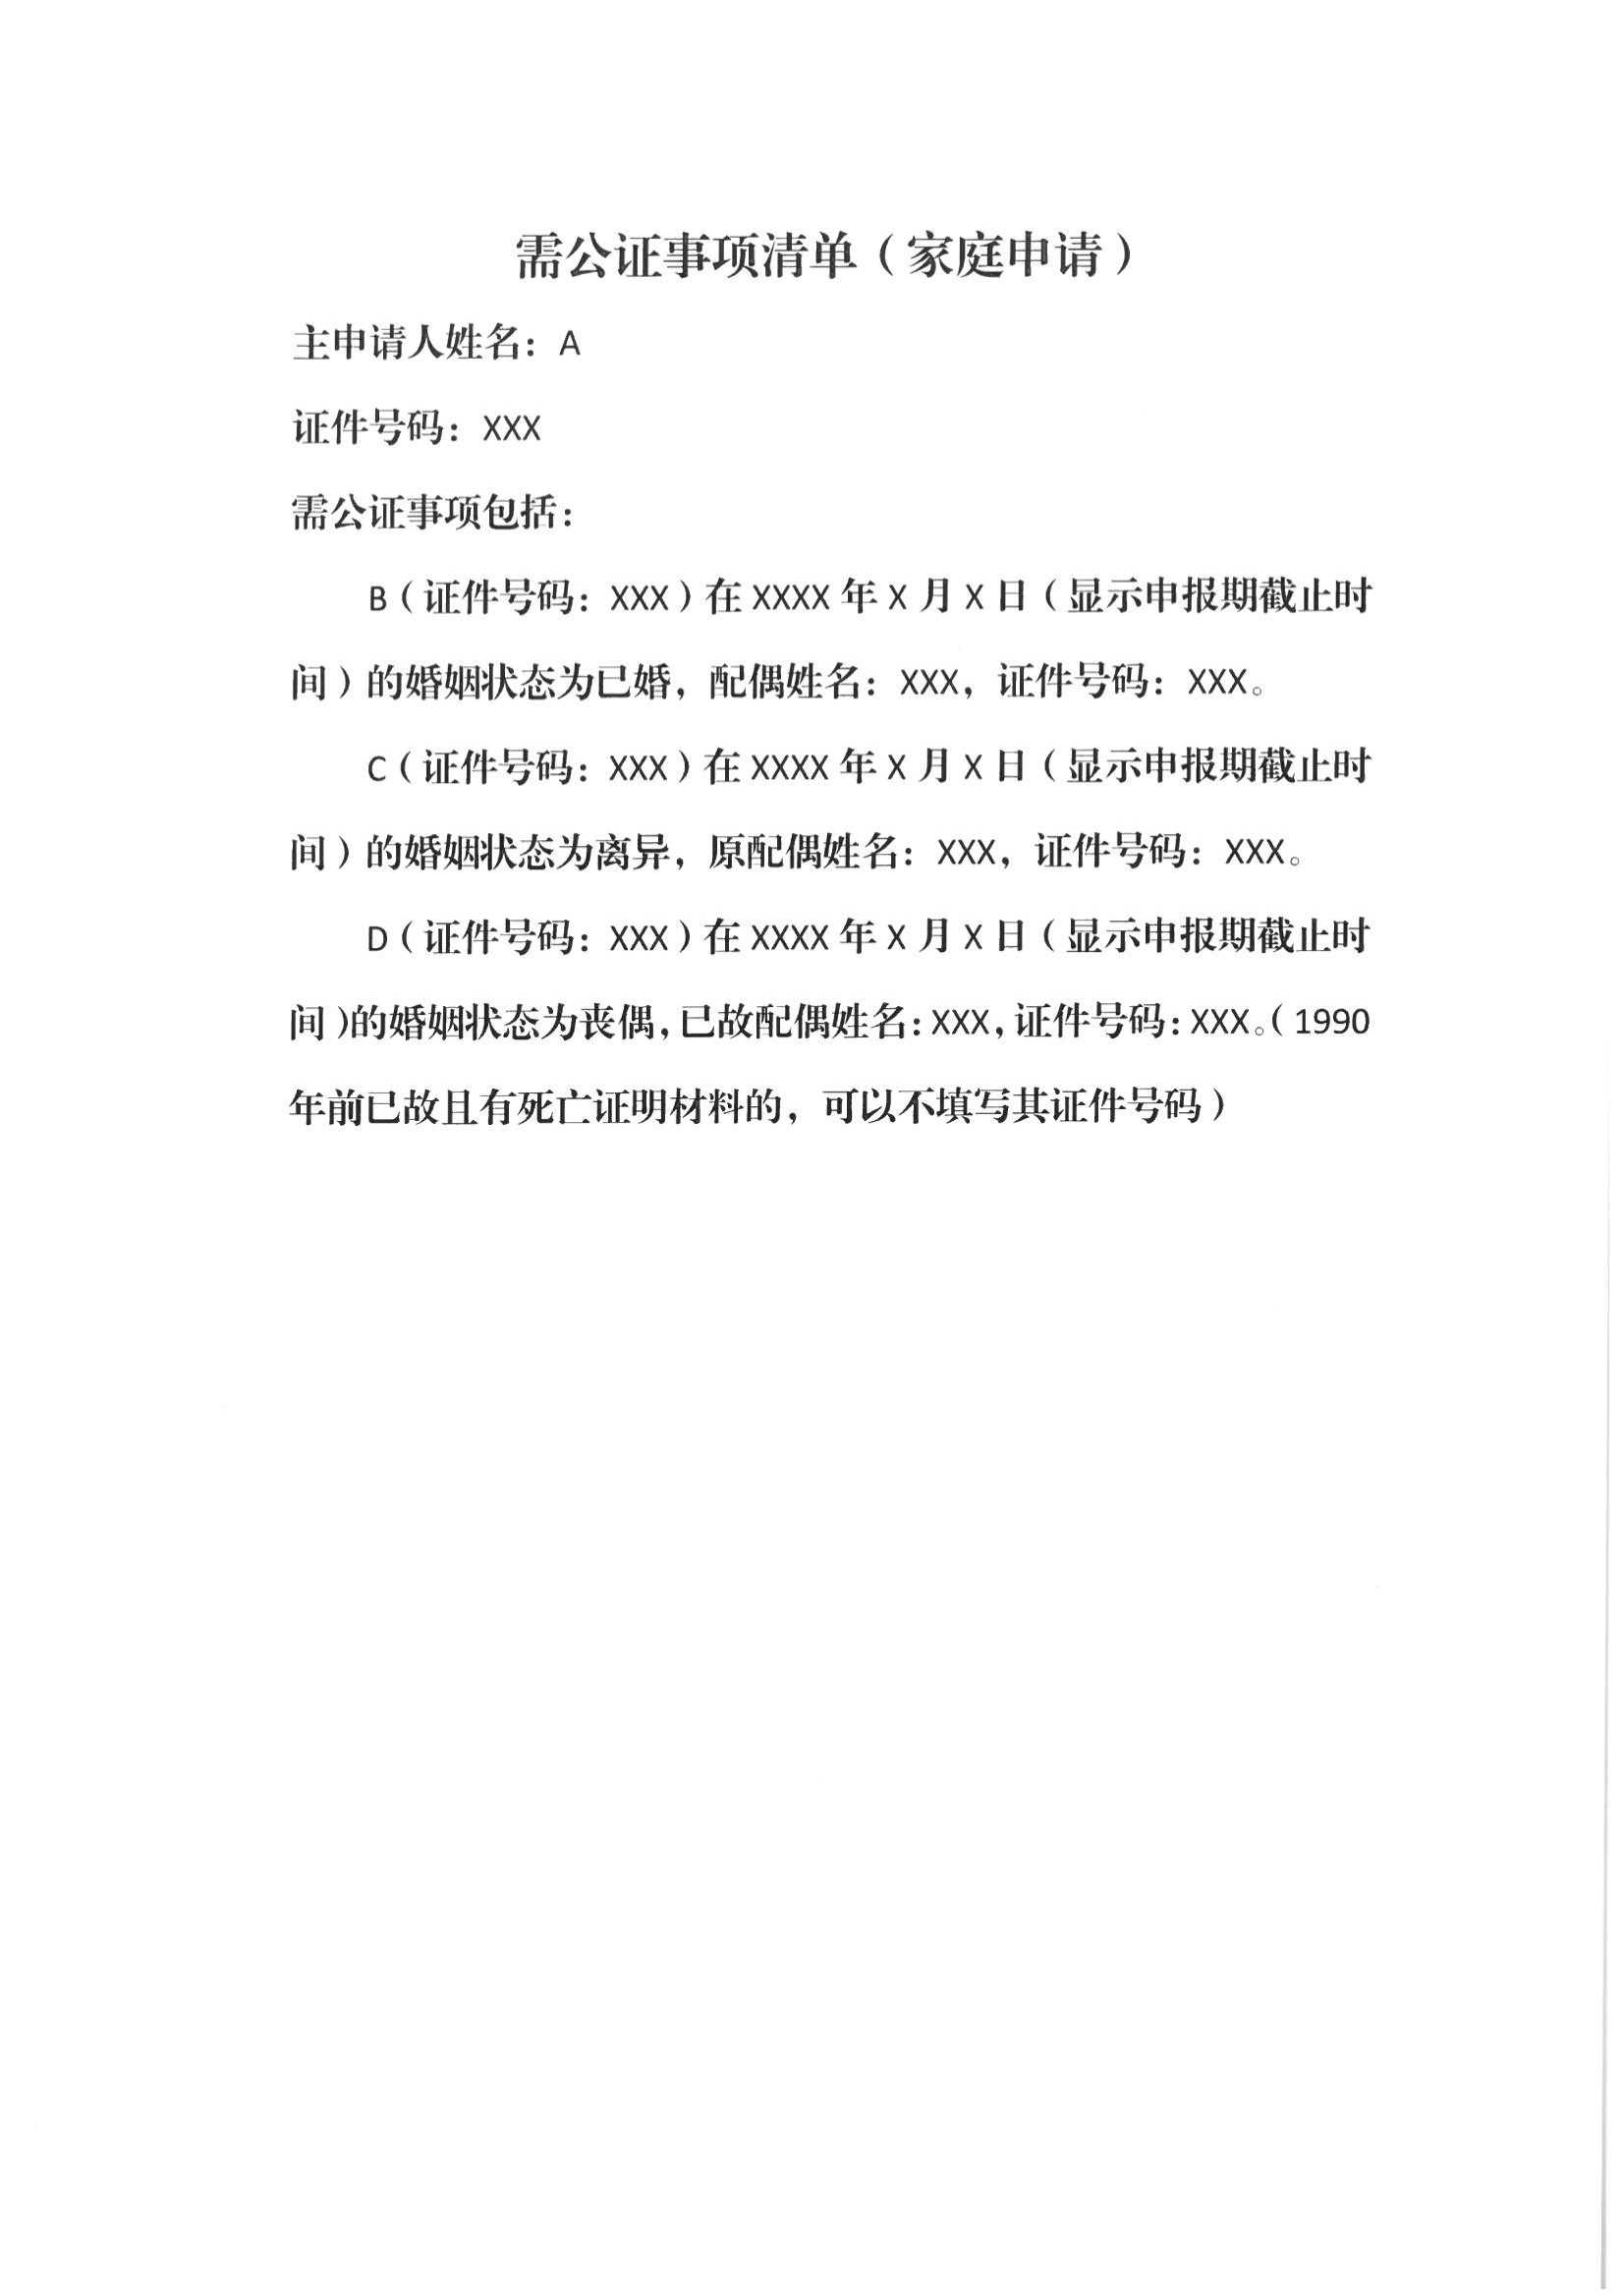 13、北京市公证协会关于印发《北京市公证协会规范执业指引》第13号的通知_48